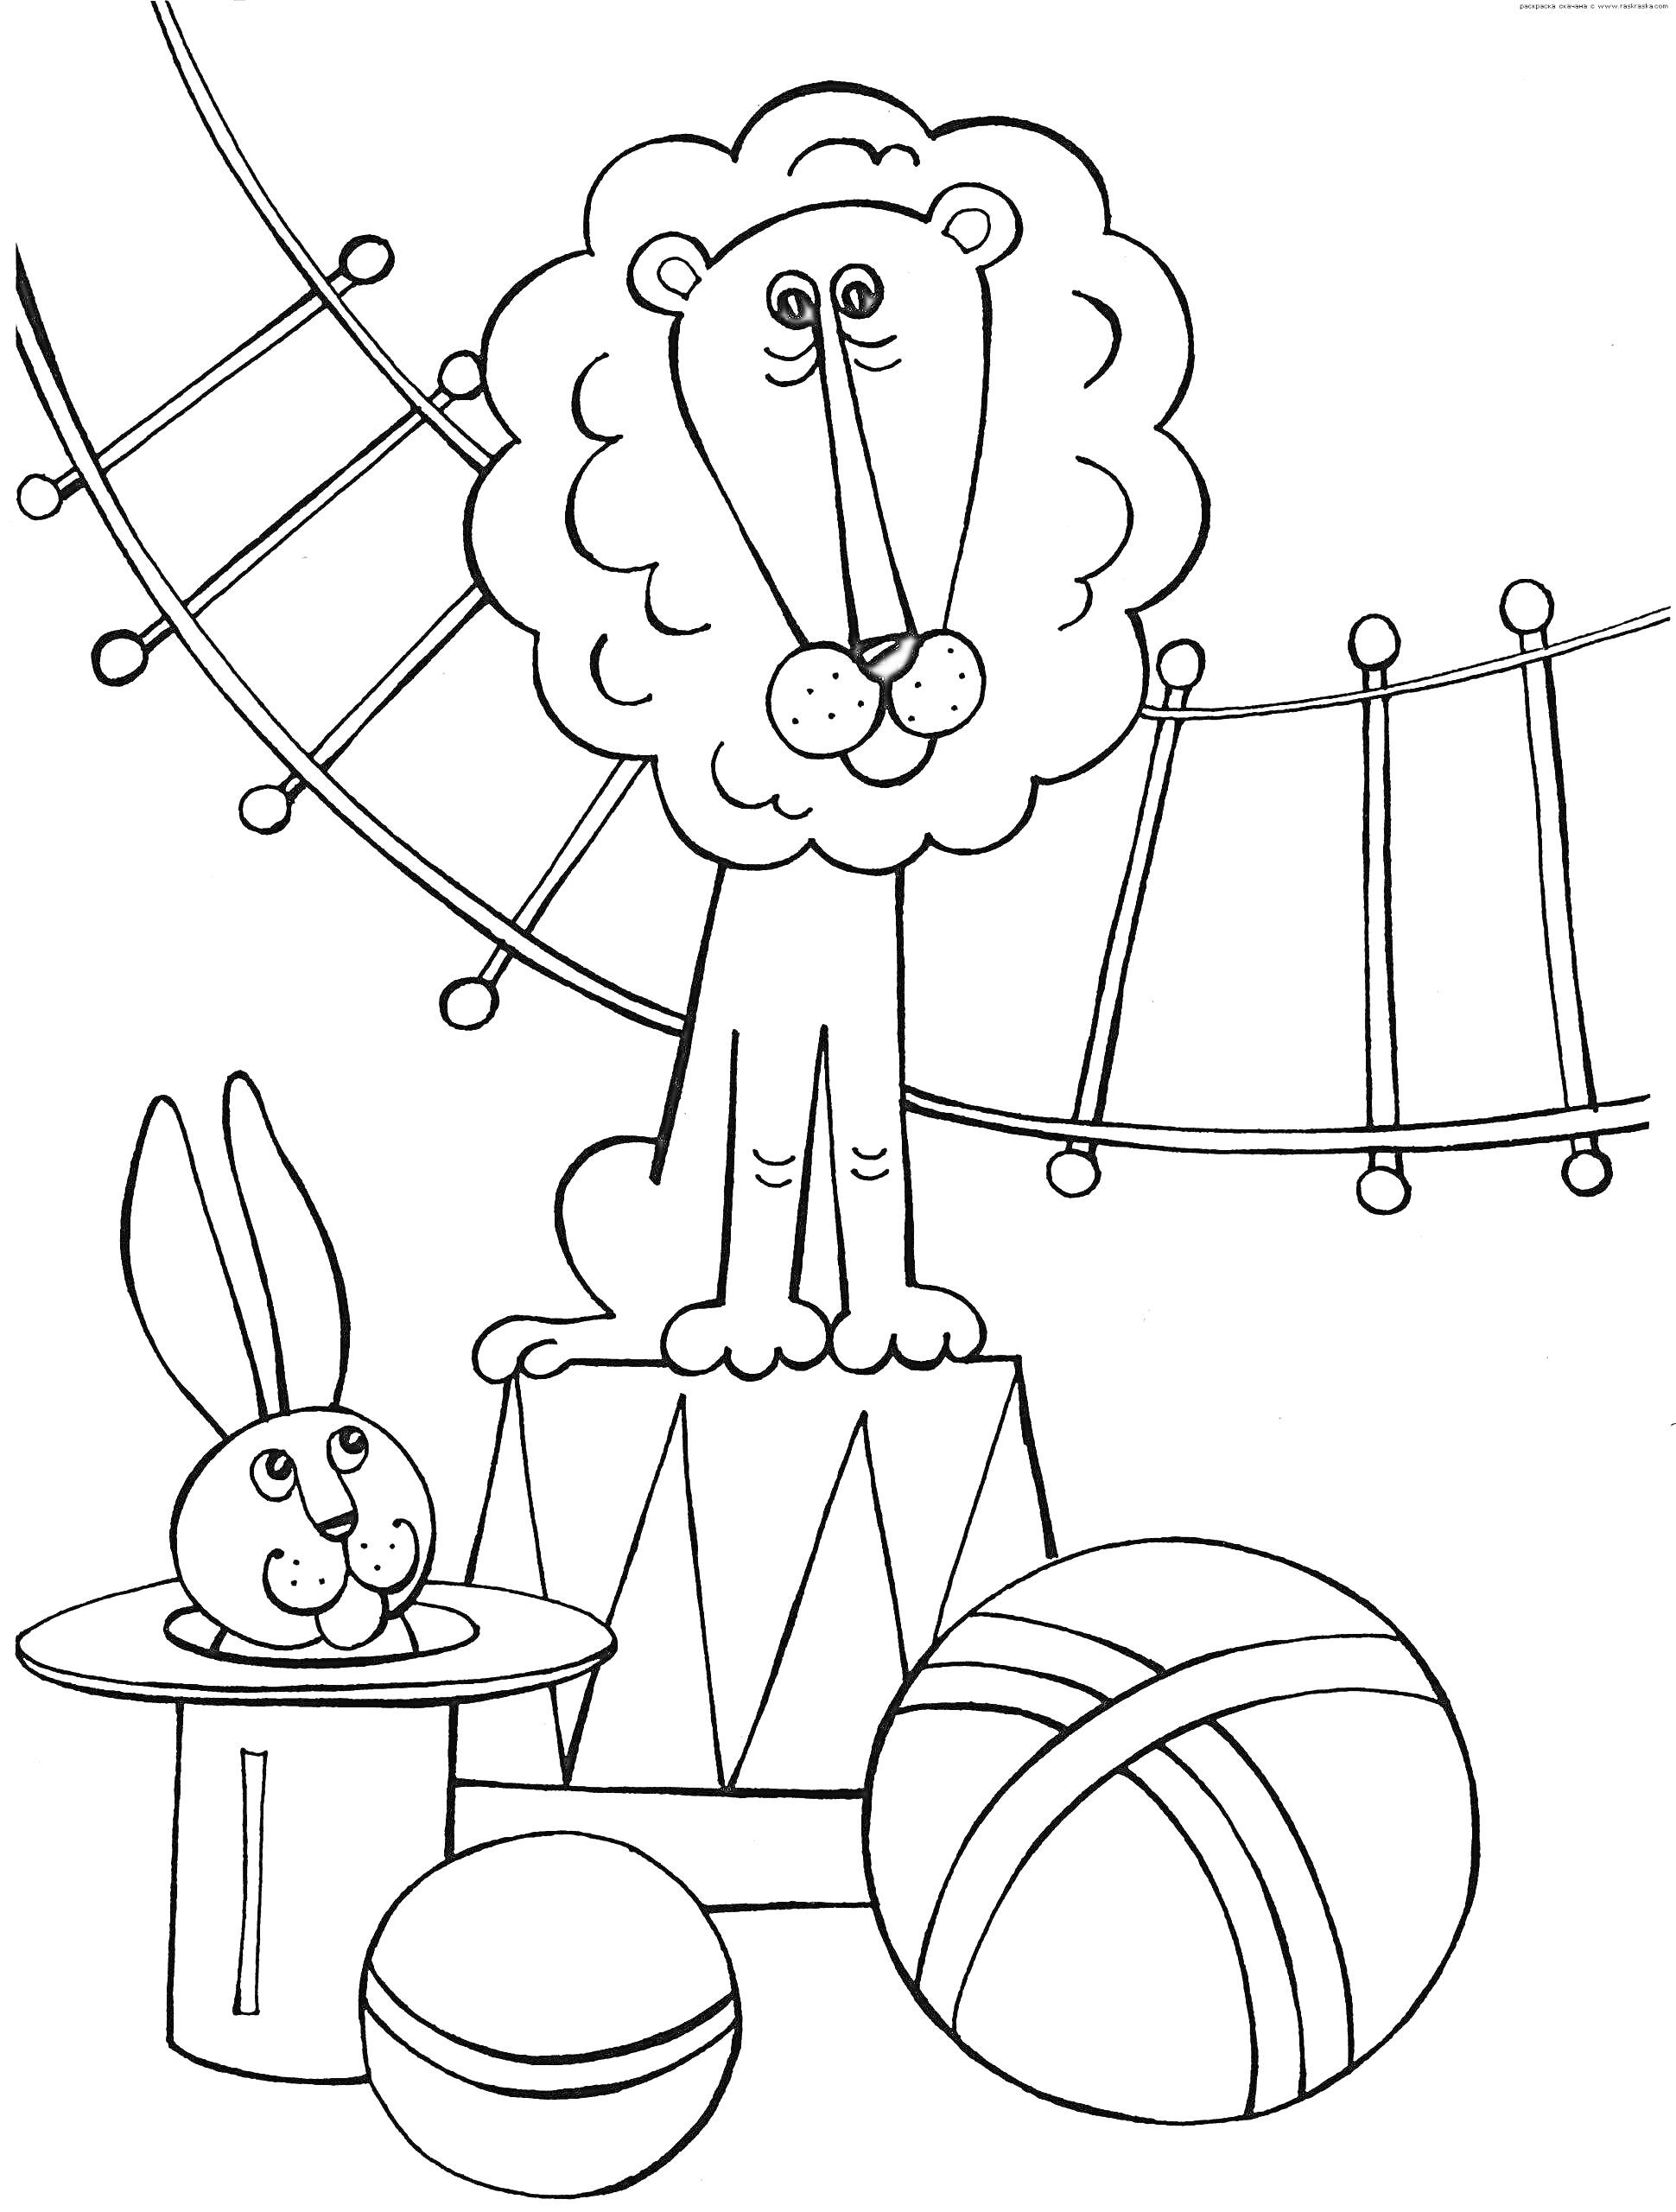 Раскраска Лев на цирковом тумбе, кролик в шляпе, два мяча и трапеция на фоне